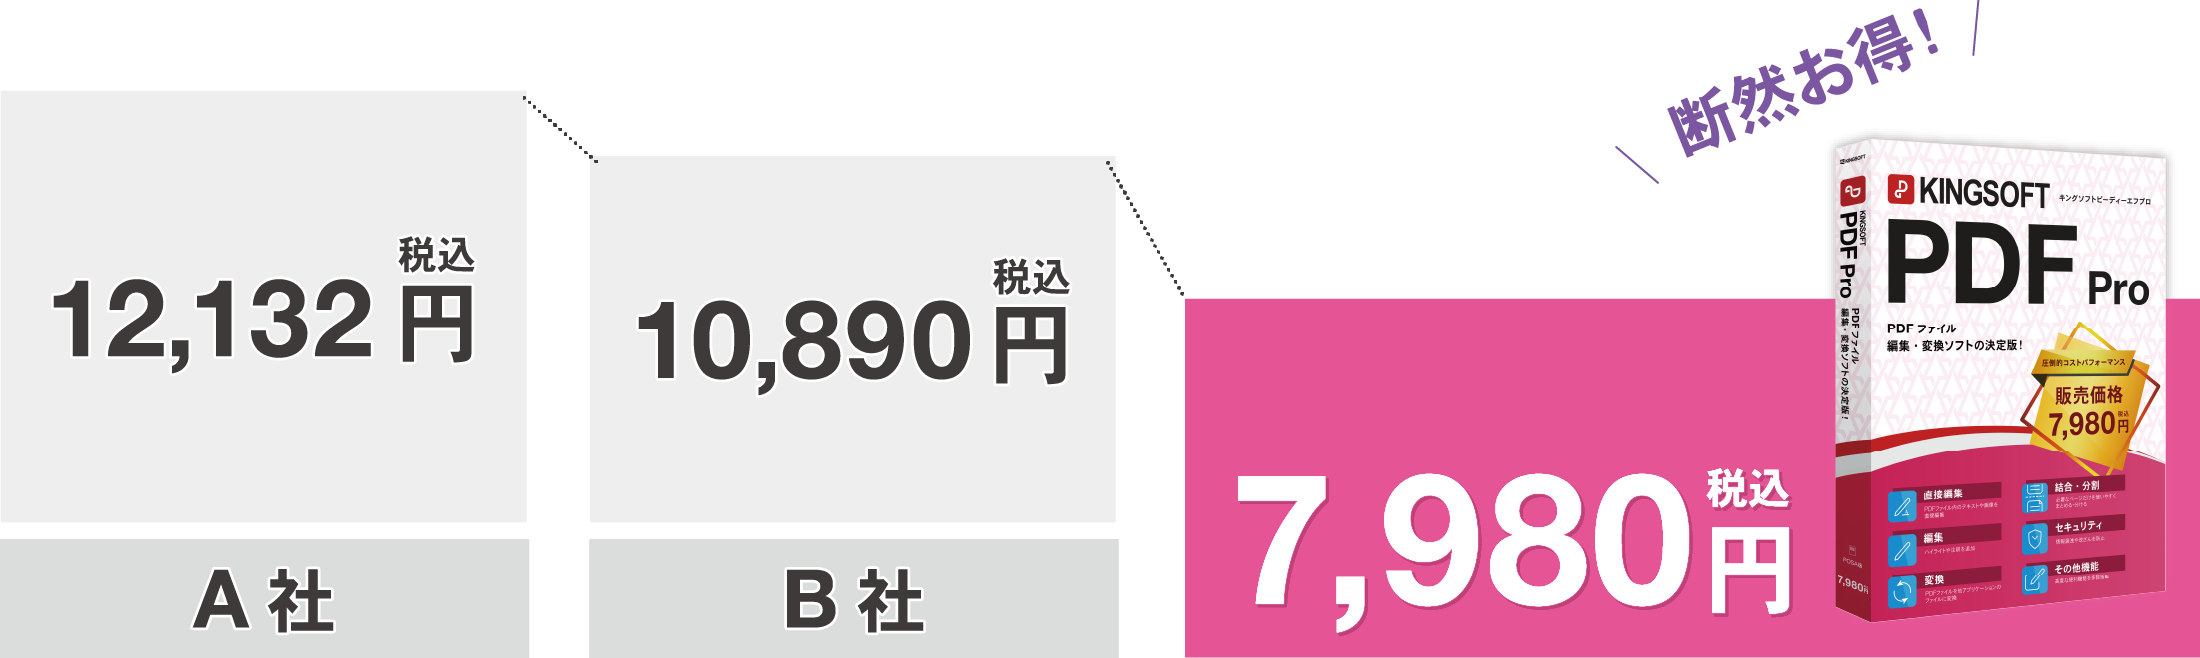 KINGSOFT PDF Pro 税込み価格7,980円